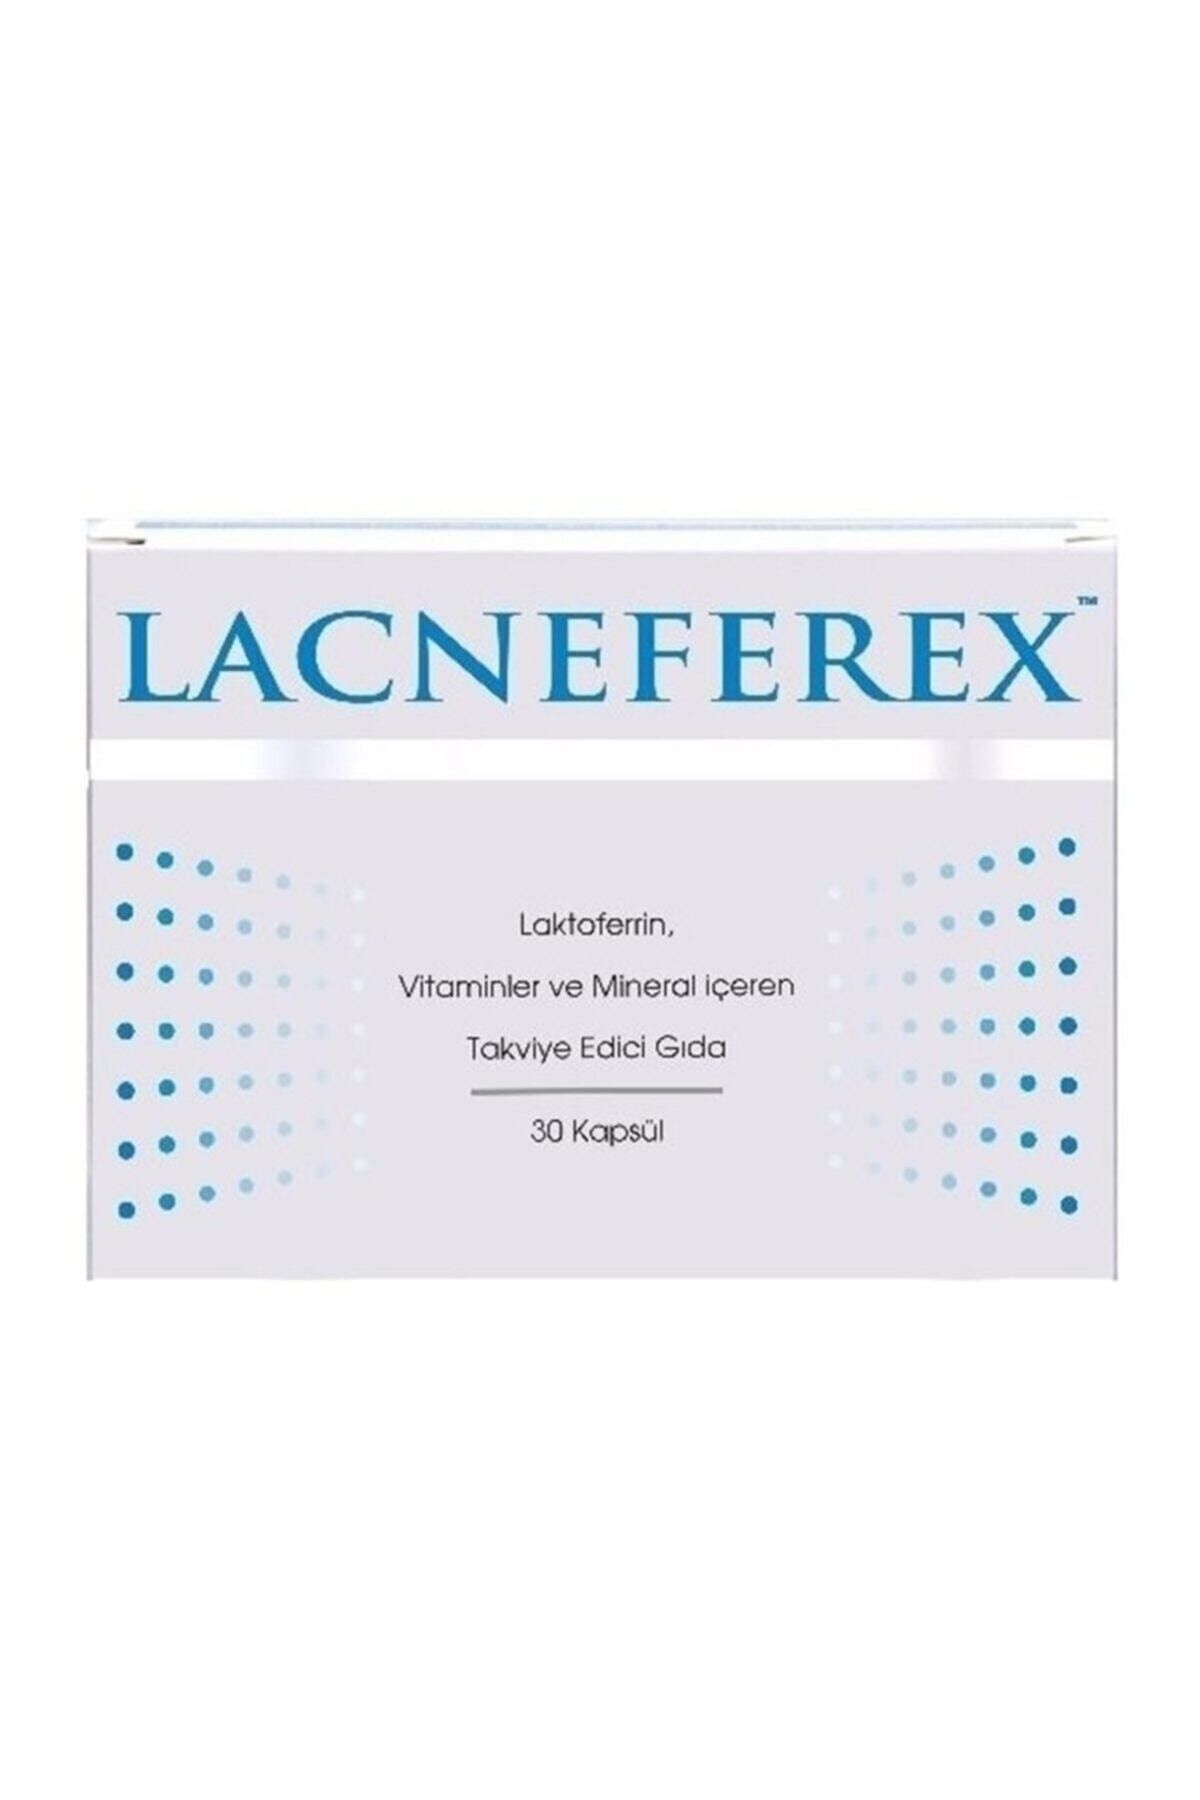 Imuneks Lacneferex 60 Kapsül